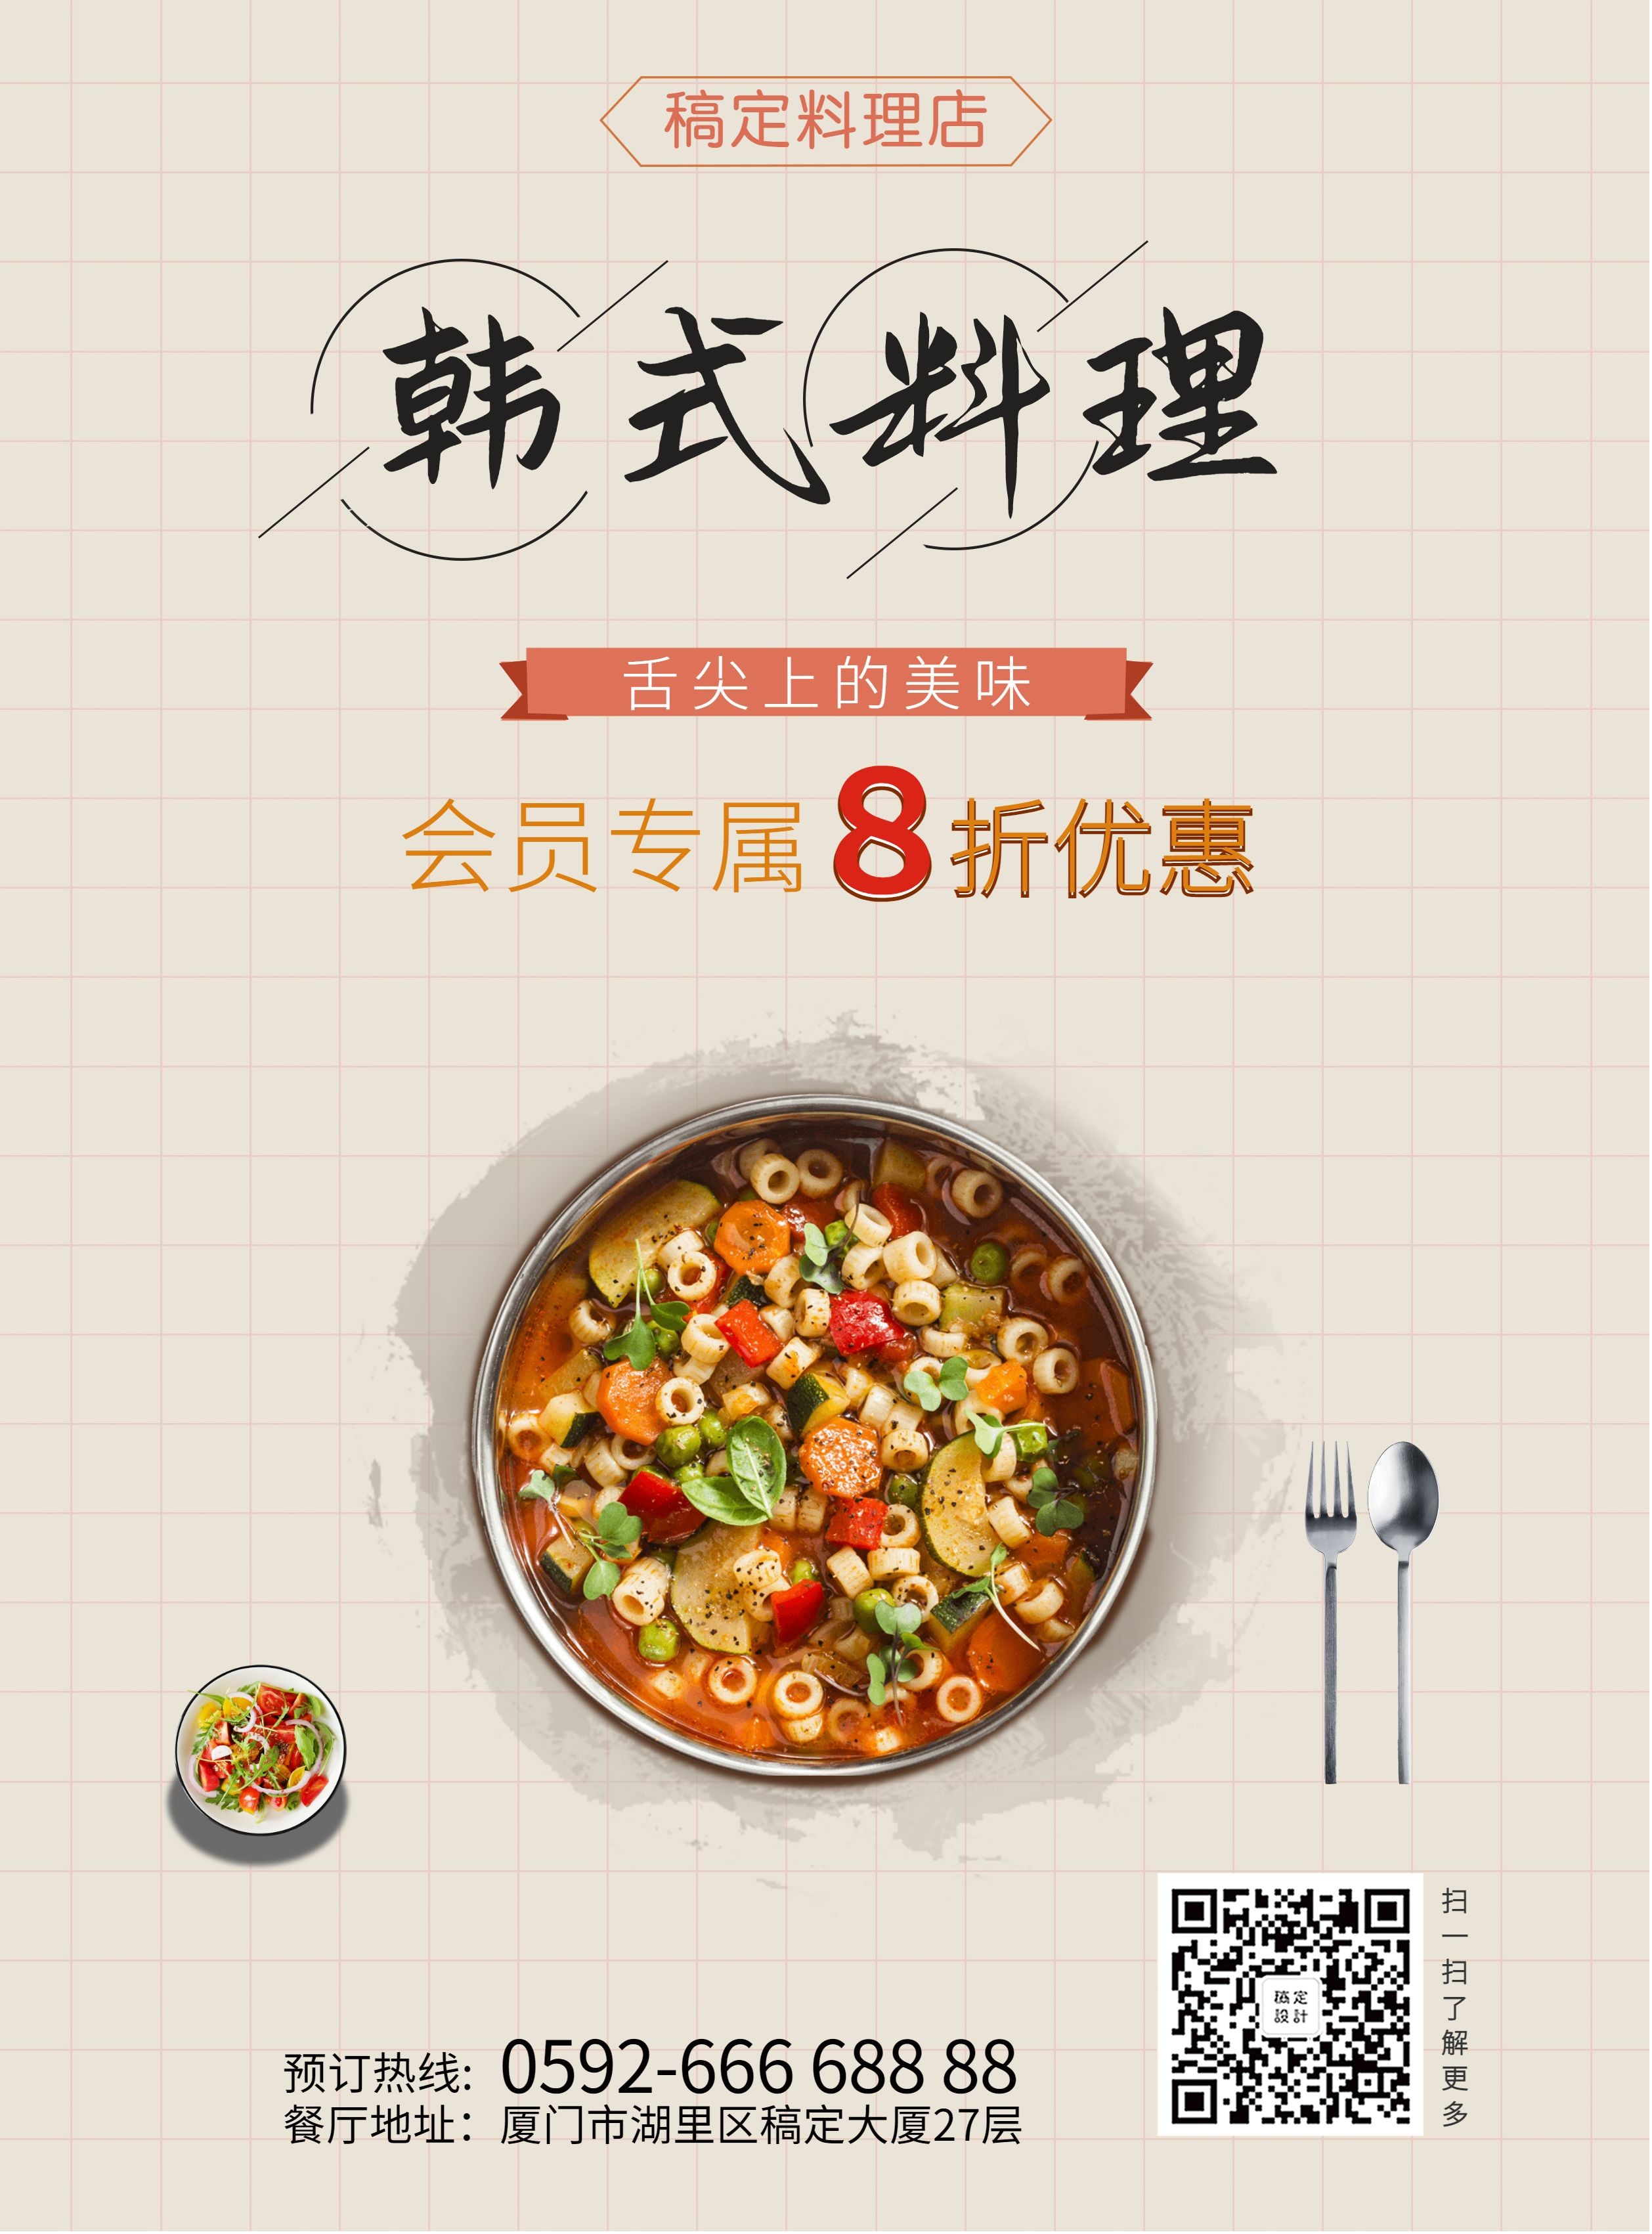 韩式料理张贴海报预览效果